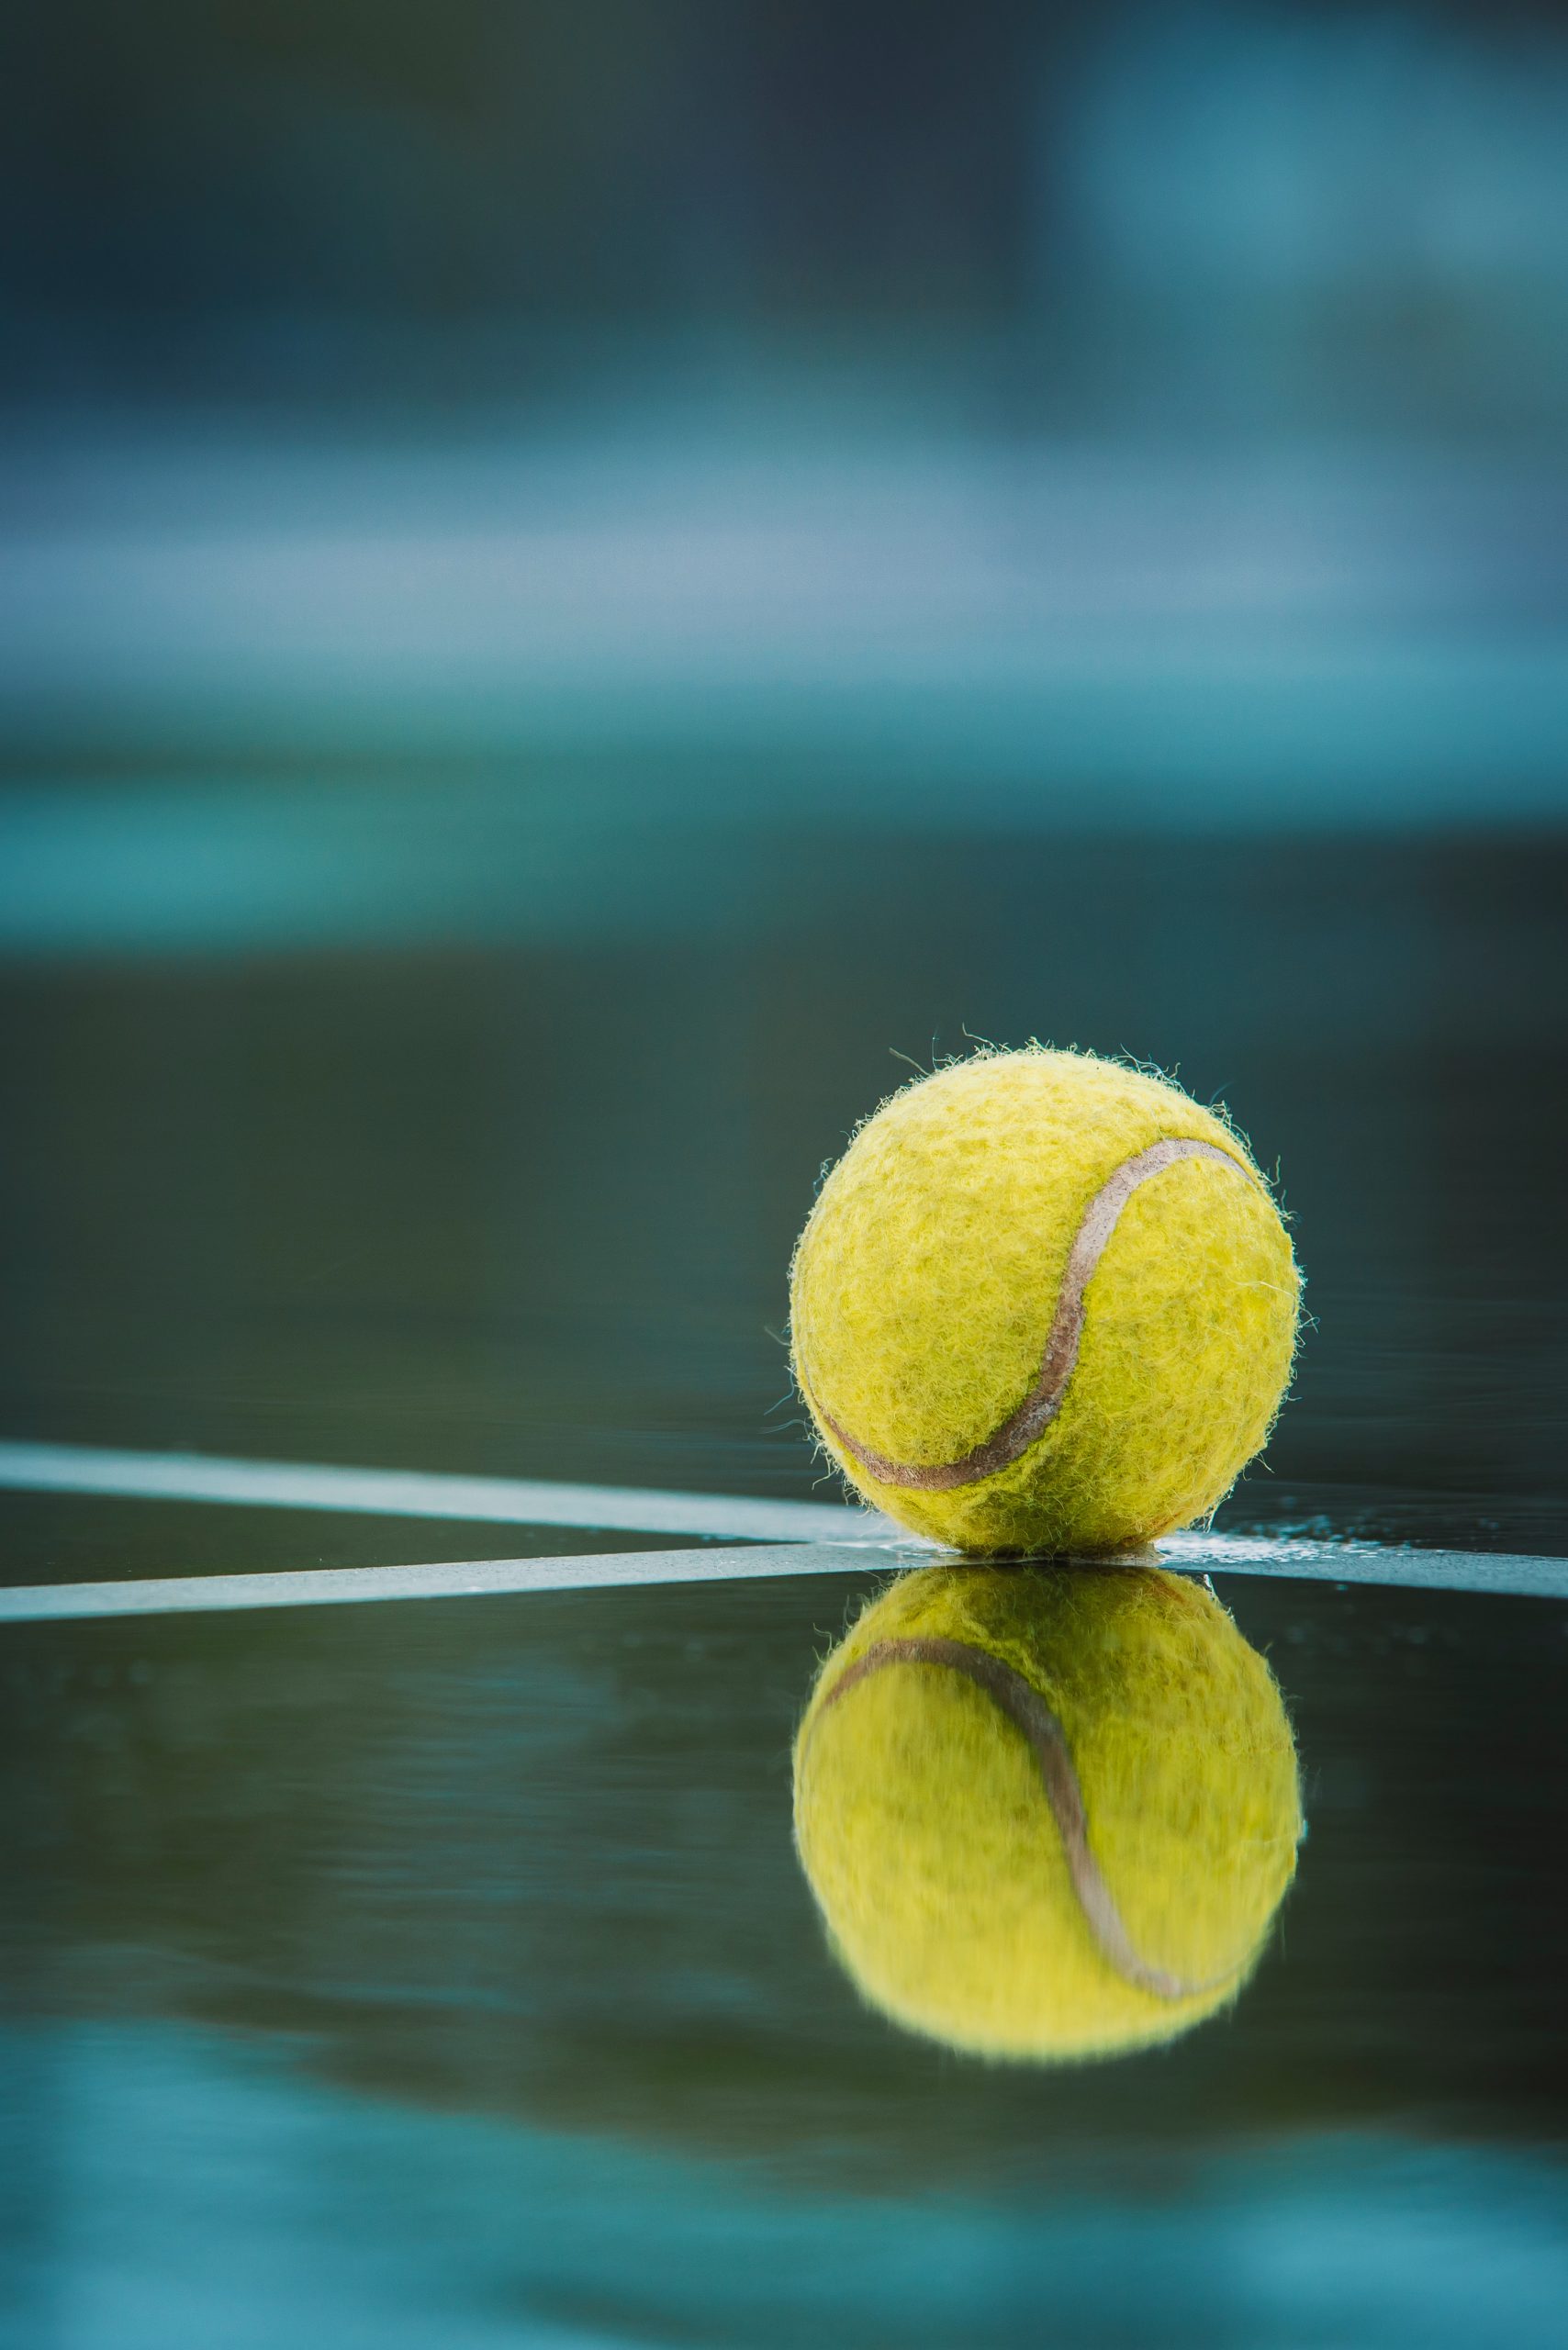 Tennis ball in the rain